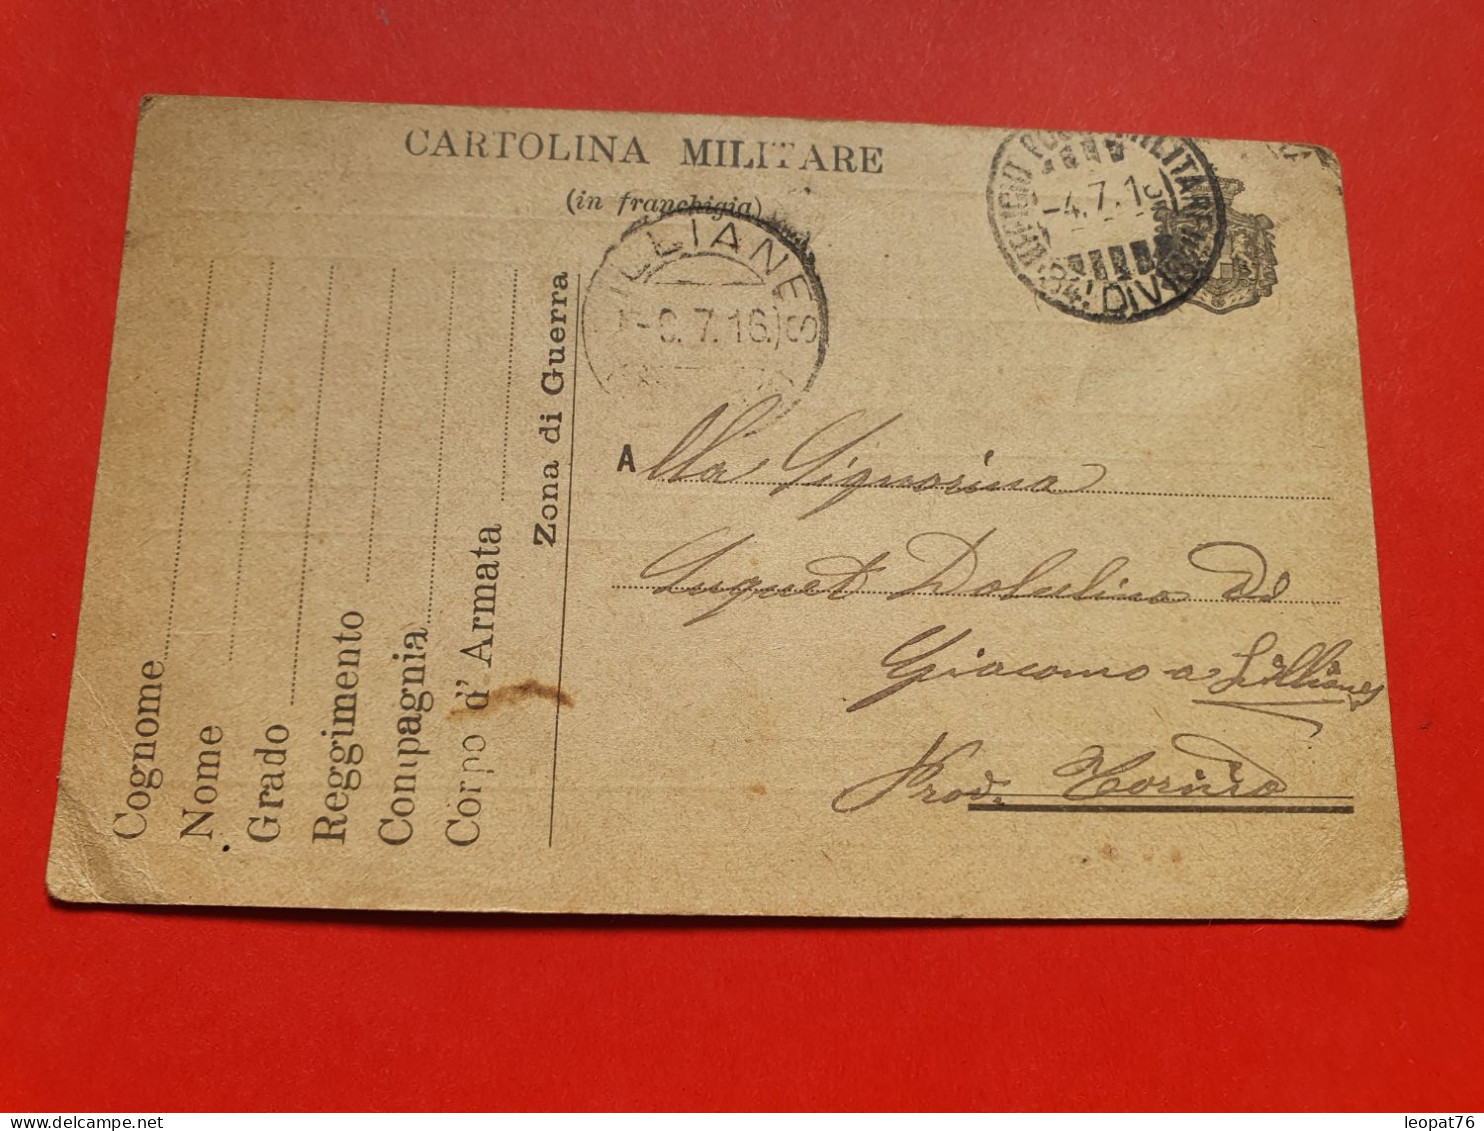 Italie - Carte FM Voyagé En 1916 - Réf 1663 - Correo Militar (PM)